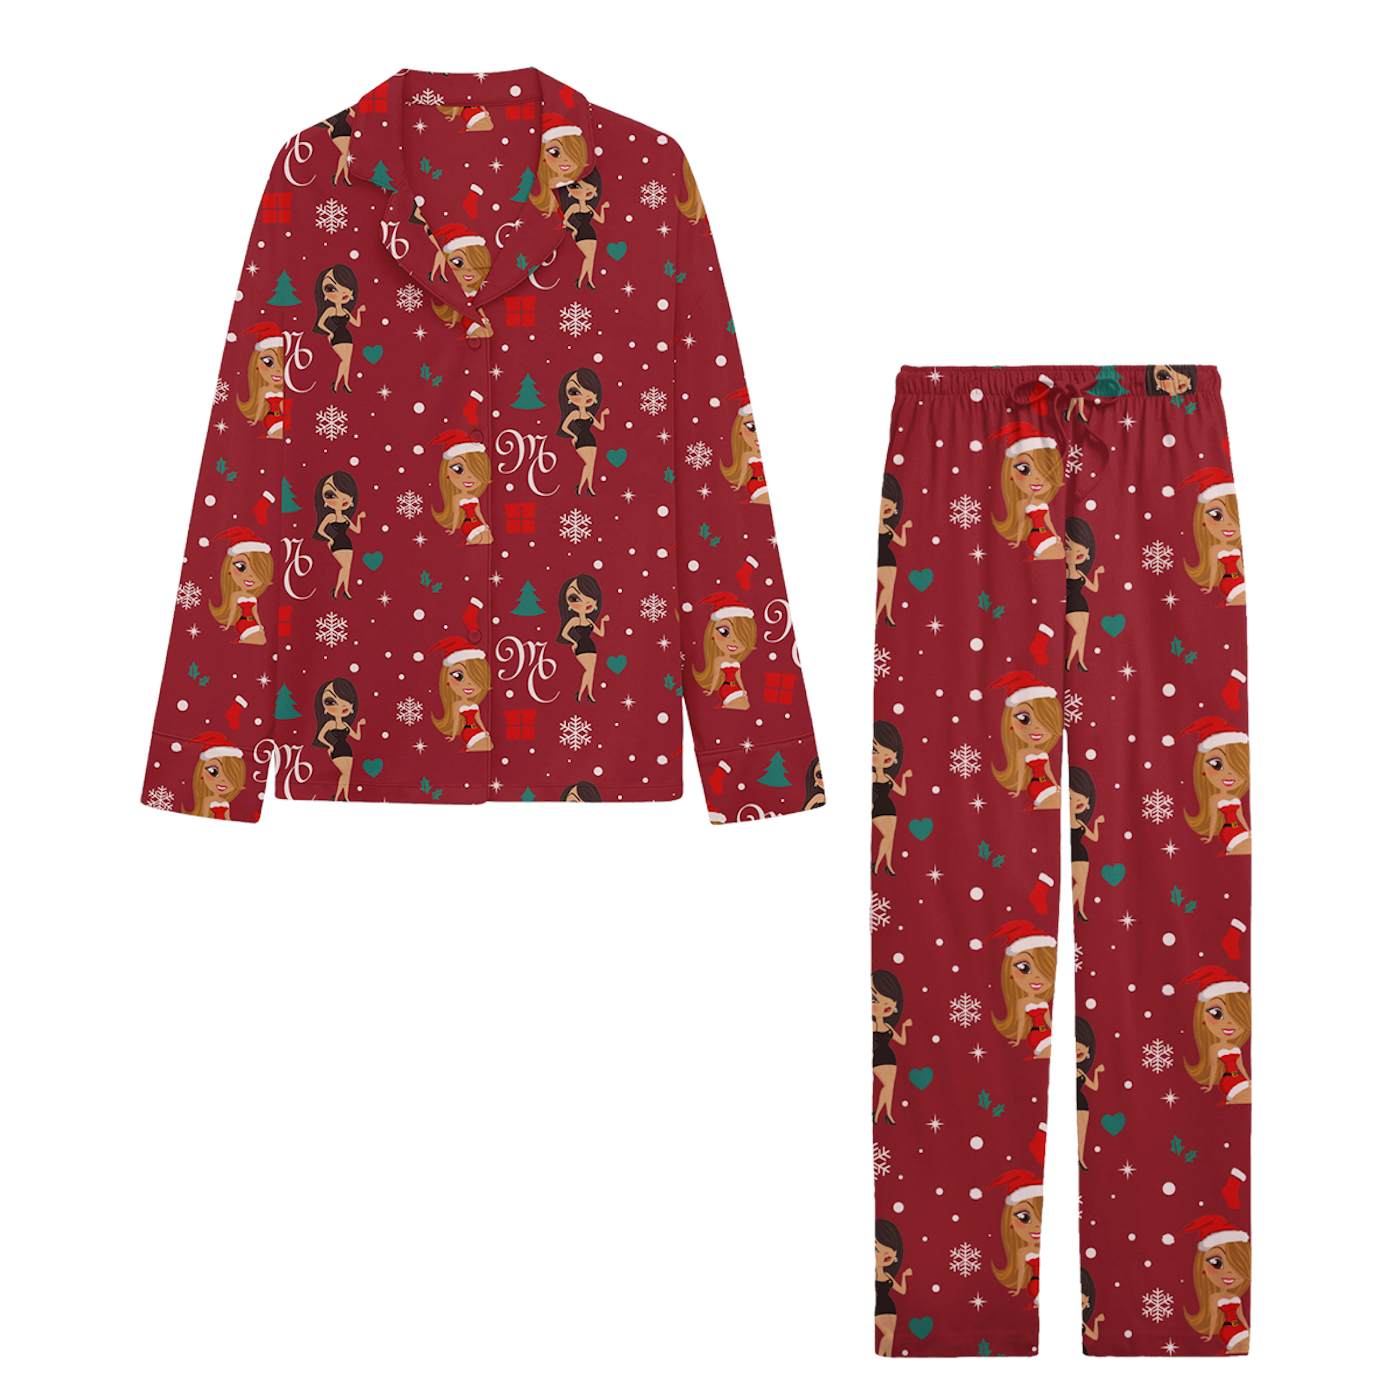 Mariah Carey Naughty and Nice Pajama Set - Red